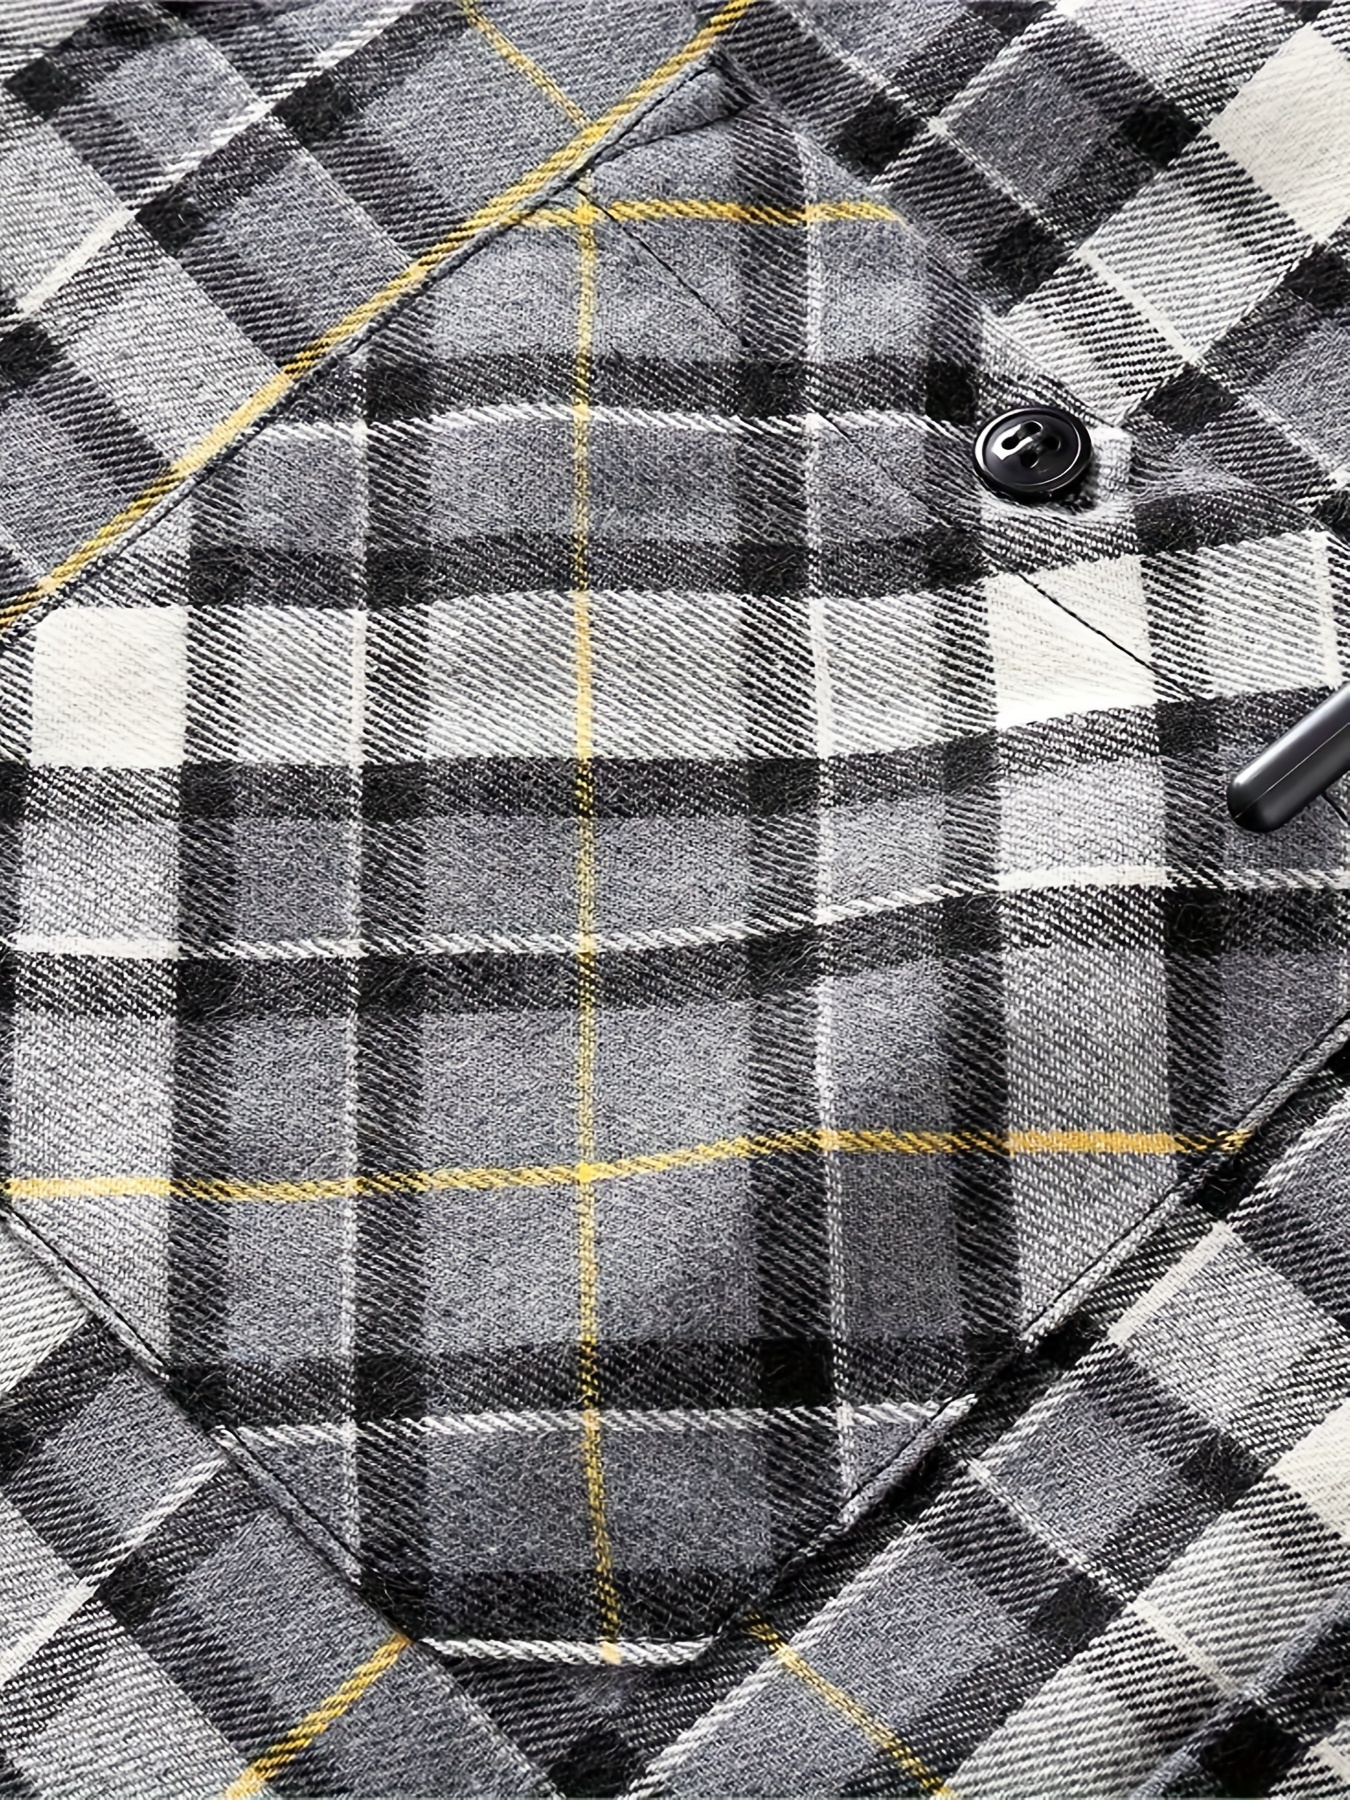 Camisas masculinas xadrez com capuz e manga comprida 2023 ajuste